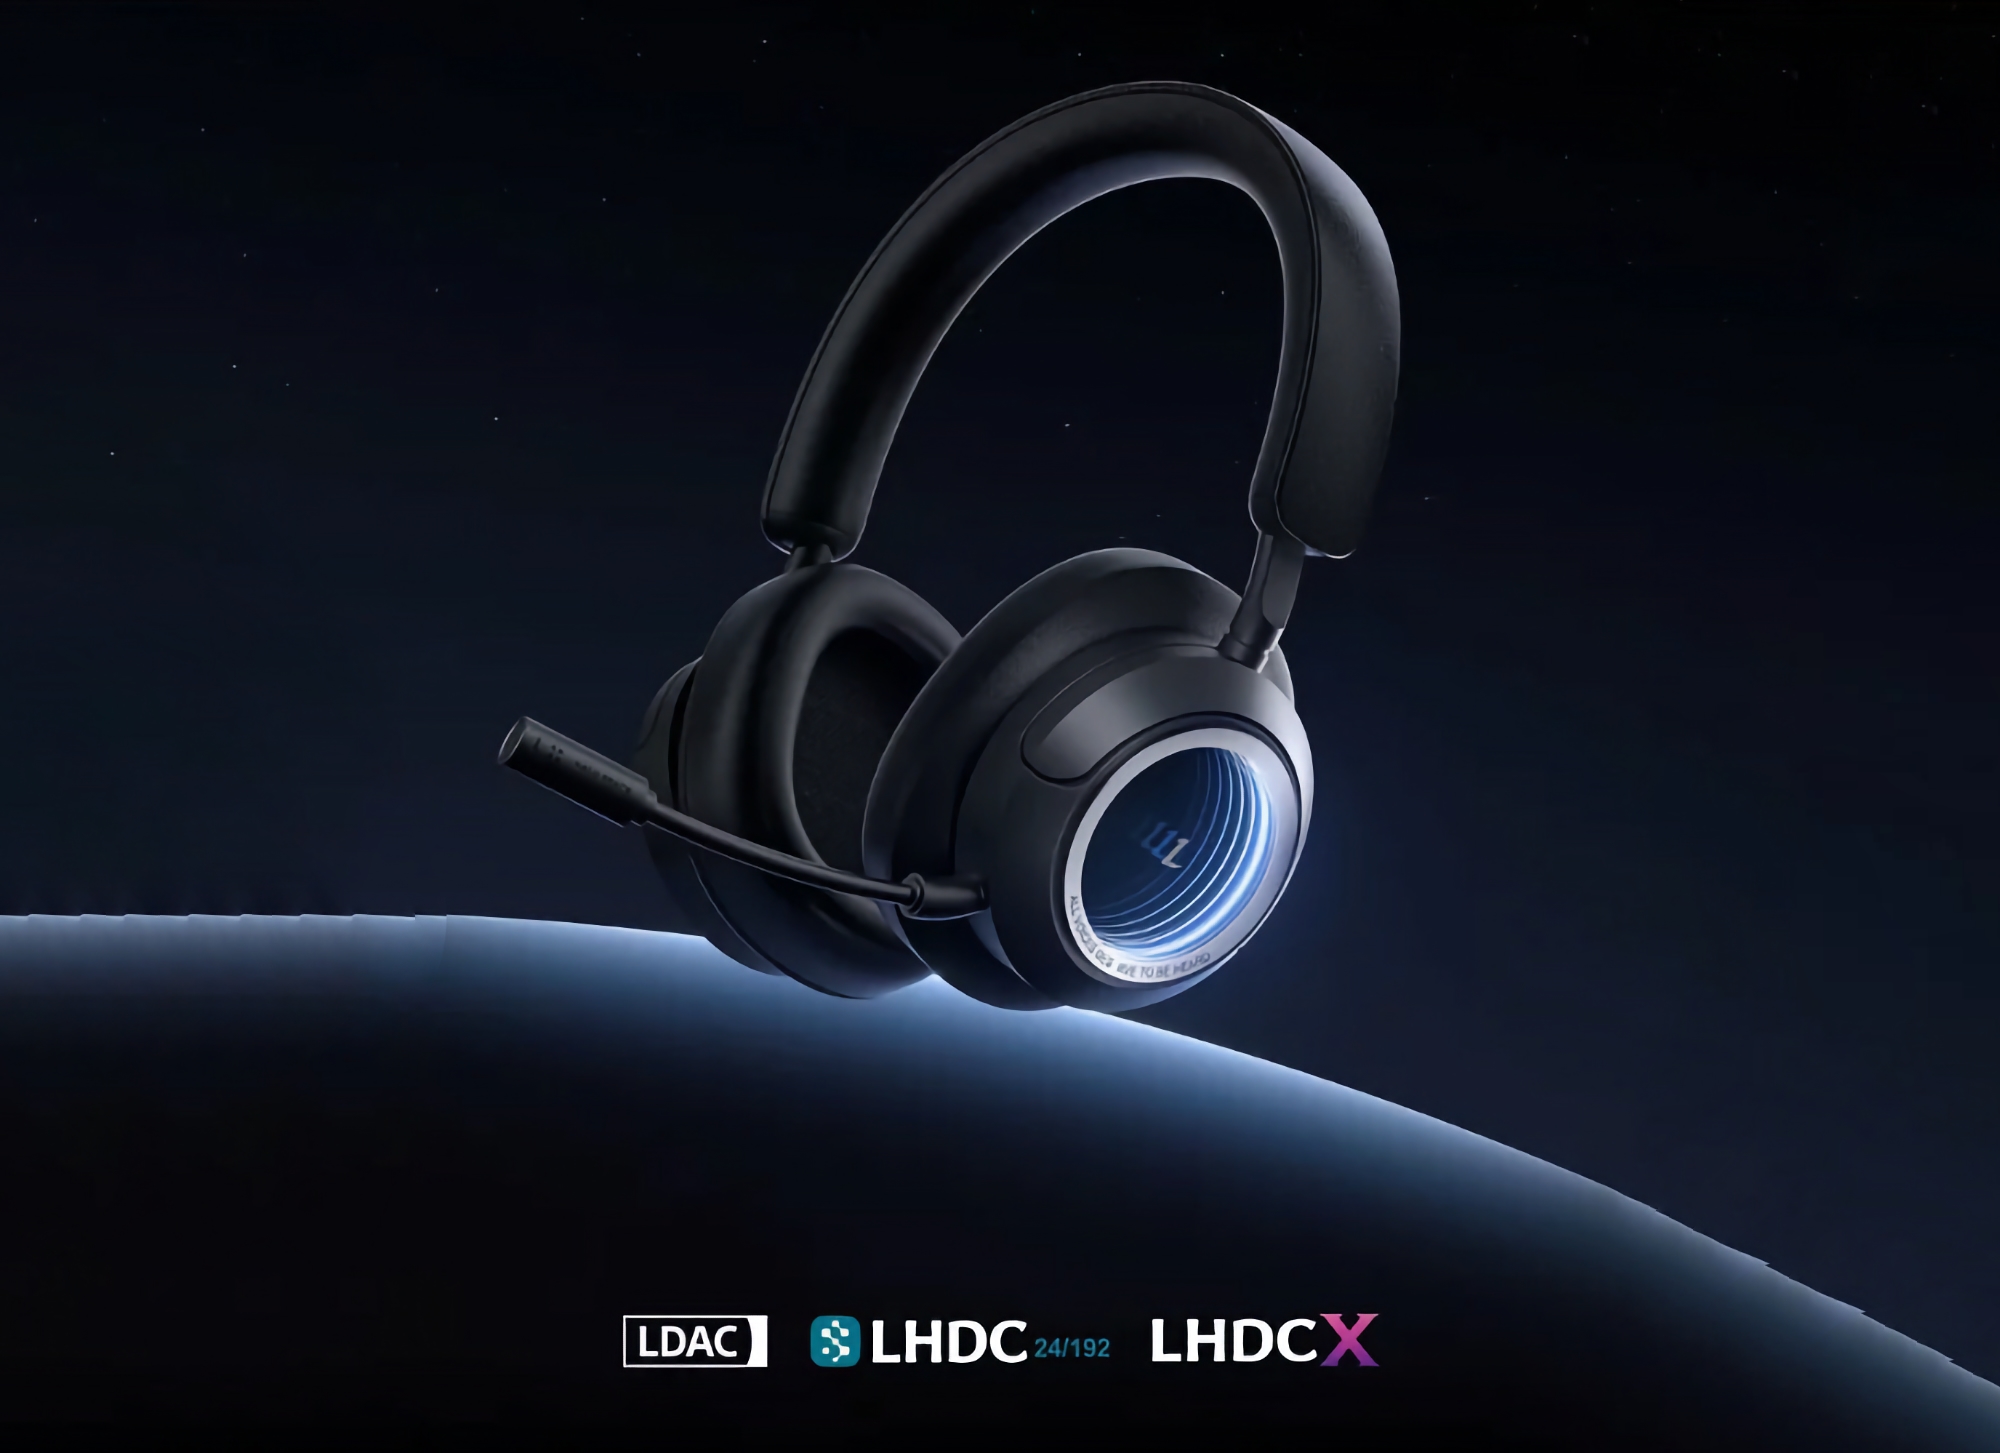 Edifier kündigt Huazai Halo Space an: Kopfhörer mit Spatial Audio, ANC und bis zu 50 Stunden Akkulaufzeit für 120 US-Dollar